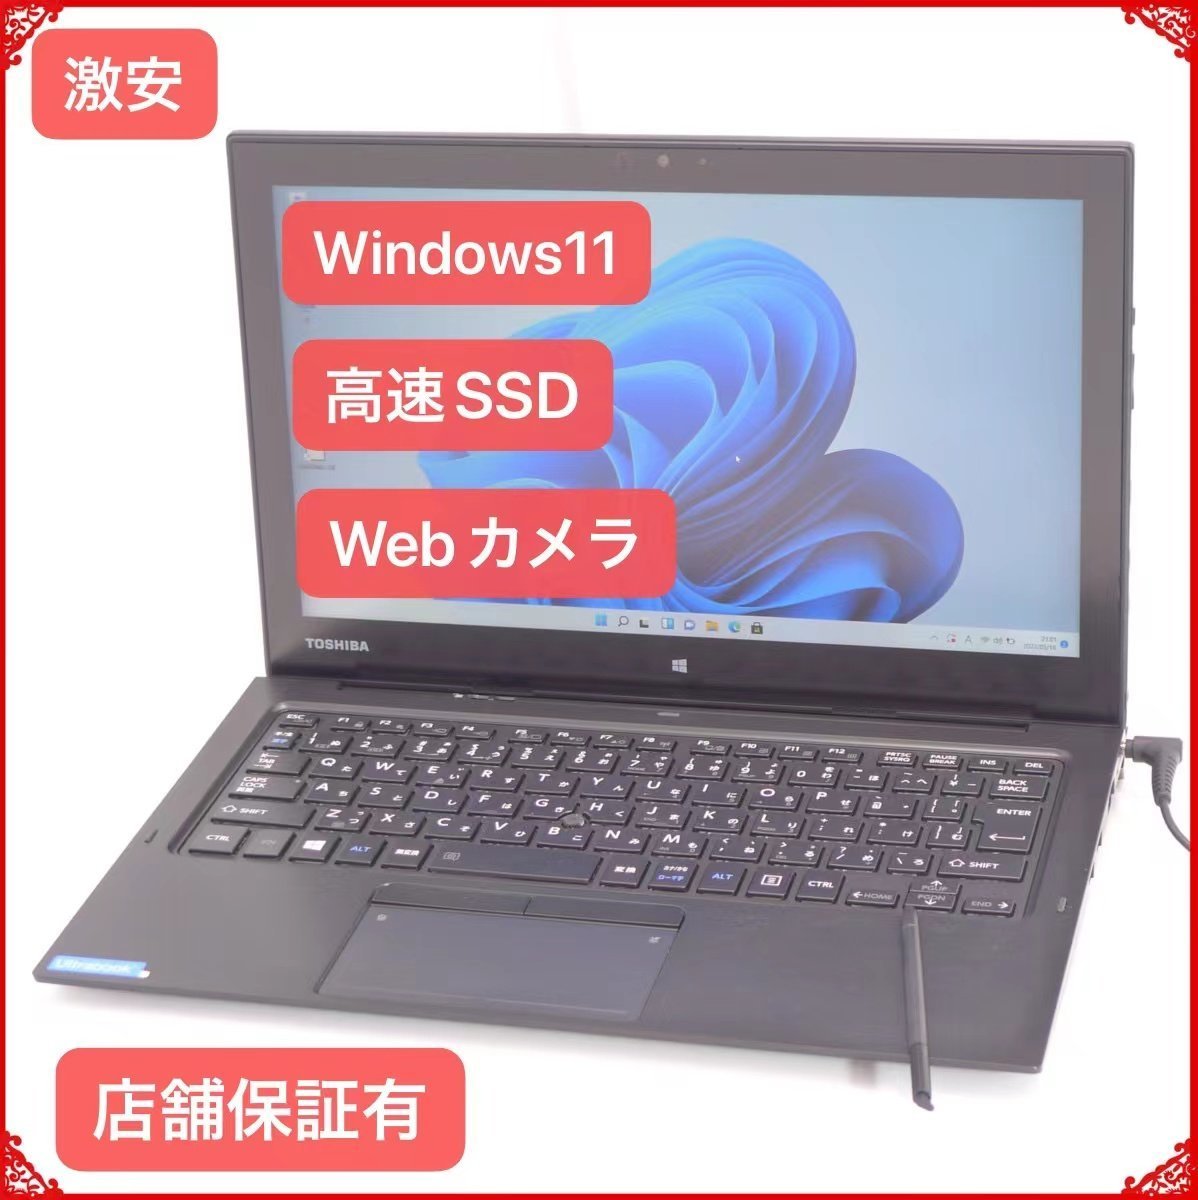 売り尽くしセール Windows11搭載 SSD 中古良品 12型 タブレット ノートパソコン 東芝 R82/D 第6世代 m5 4GB 無線 Bluetooth カメラ Office